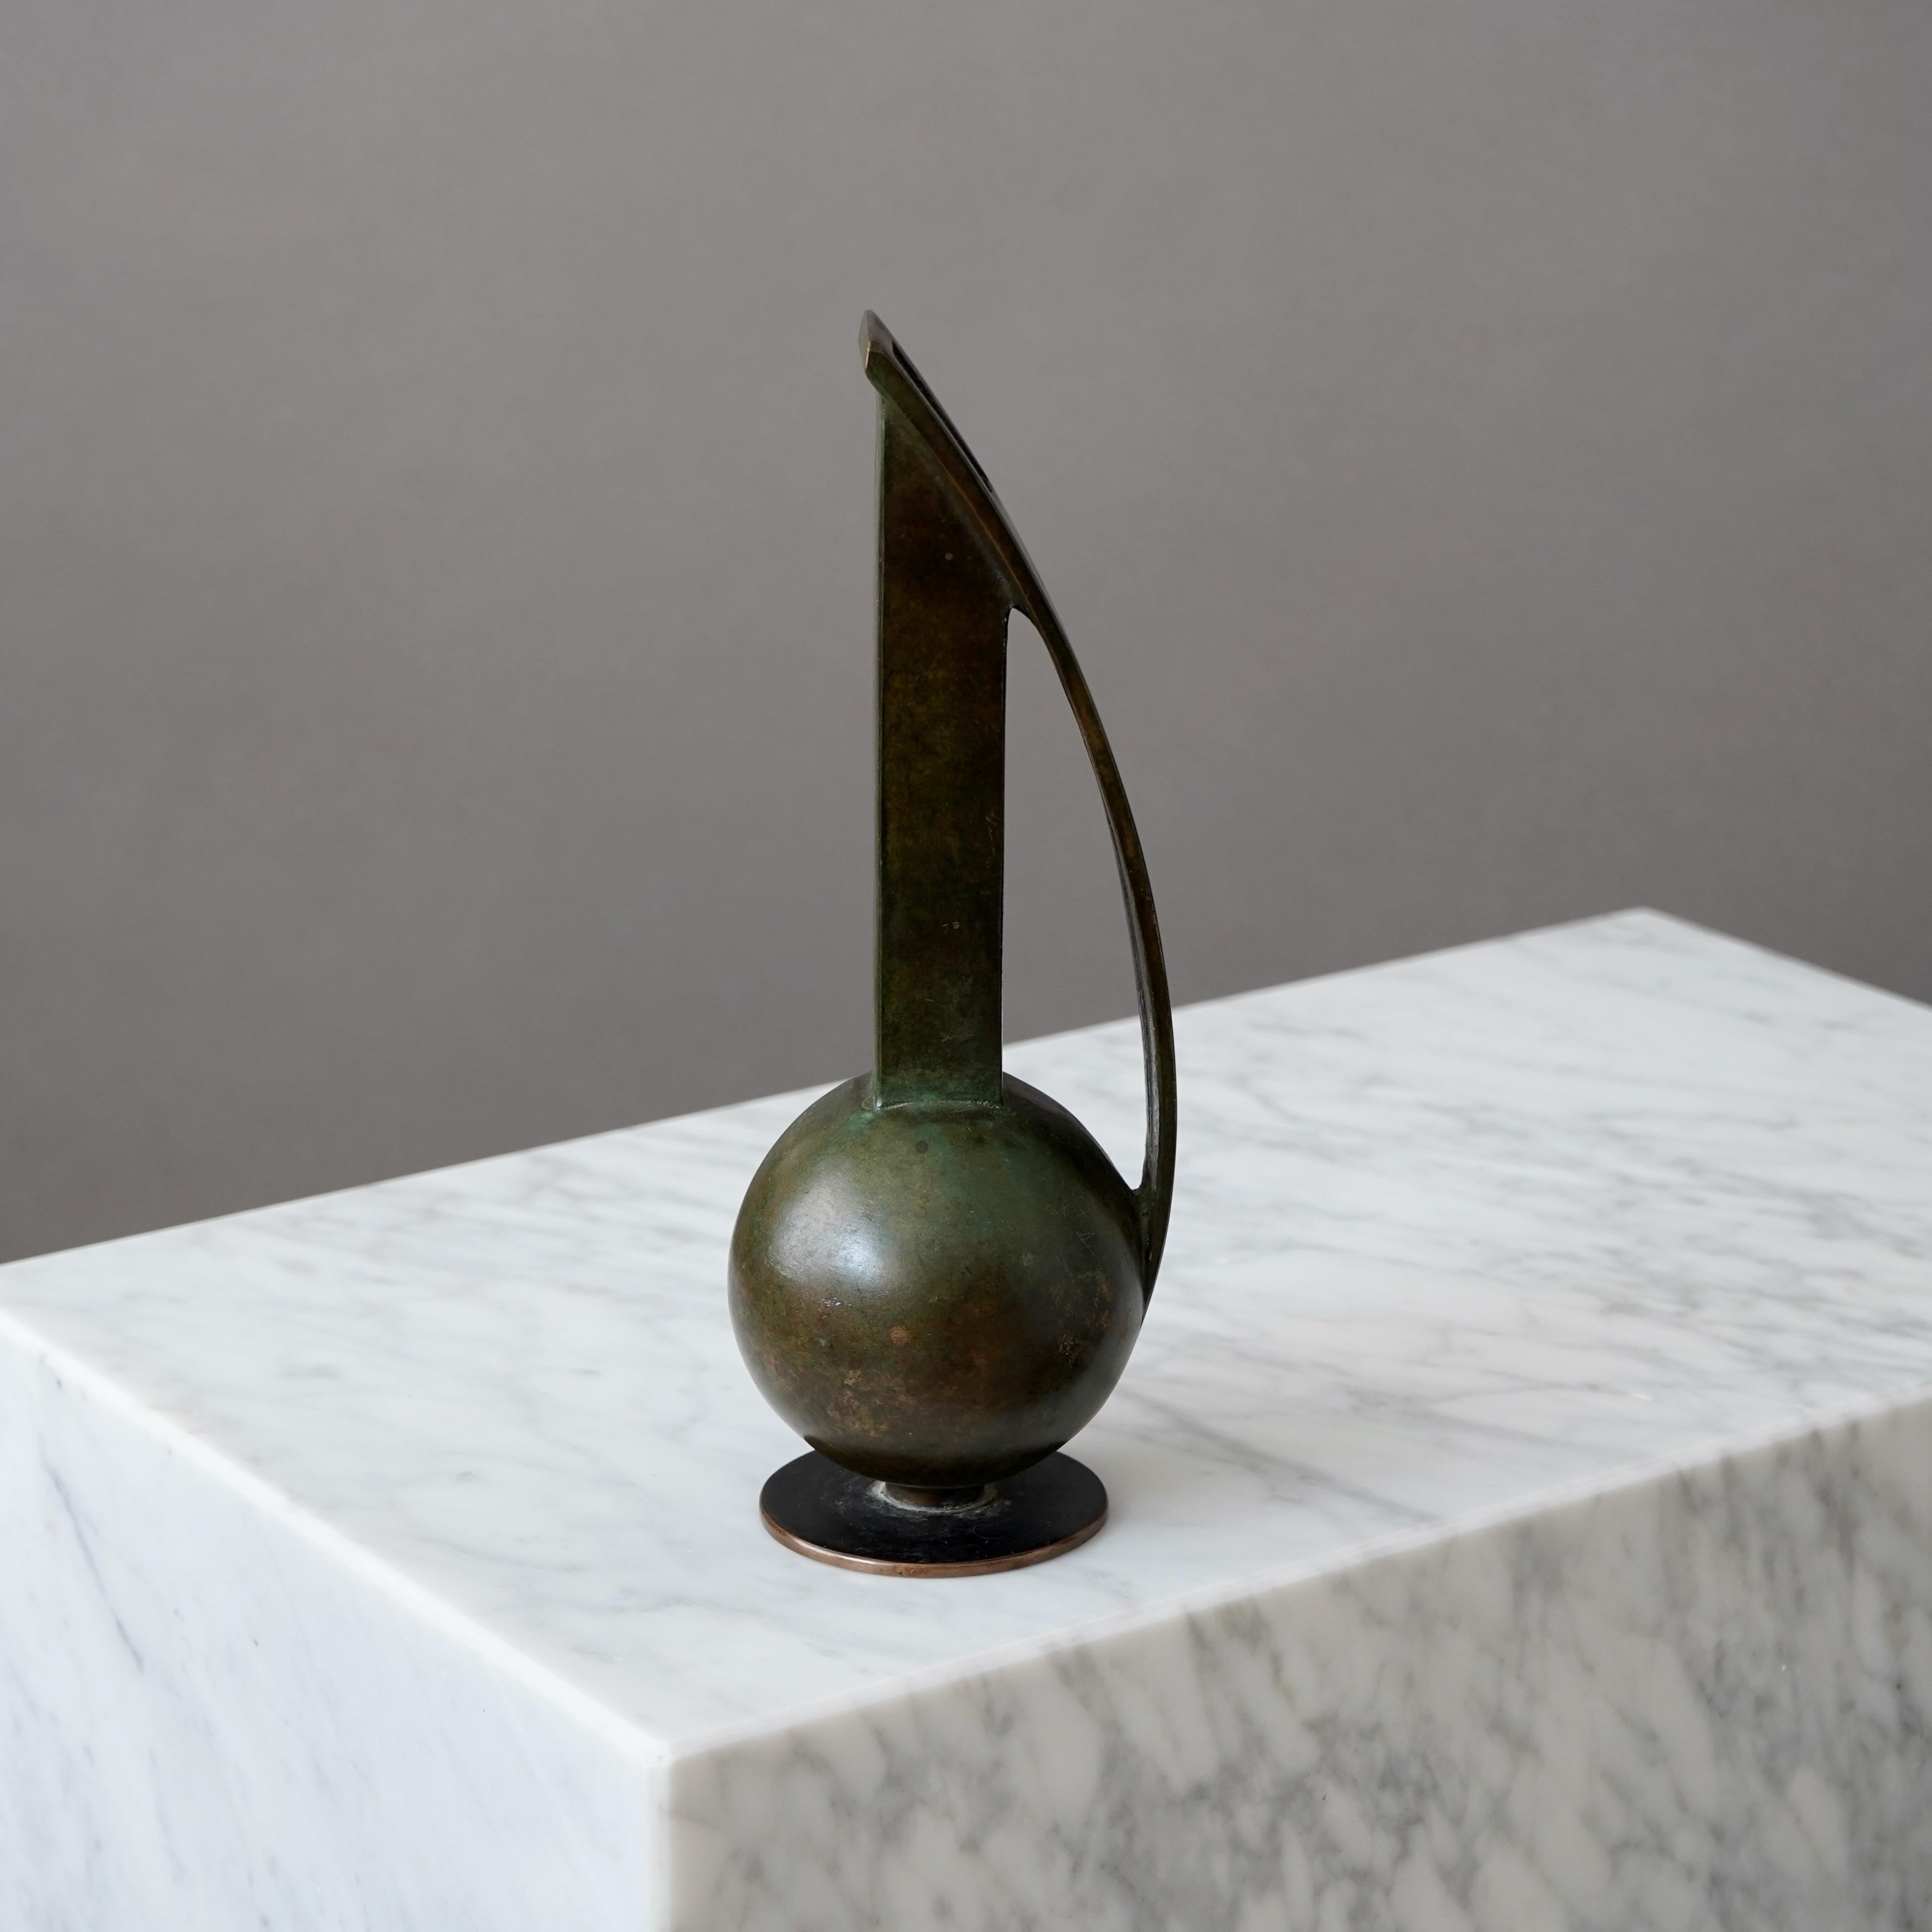 Un magnifique vase art déco en bronze avec une patine étonnante. 
Fabriqué par Bowie brons en Suède, années 1930.  

Très bon état, avec quelques légères rayures.
Estampillé 